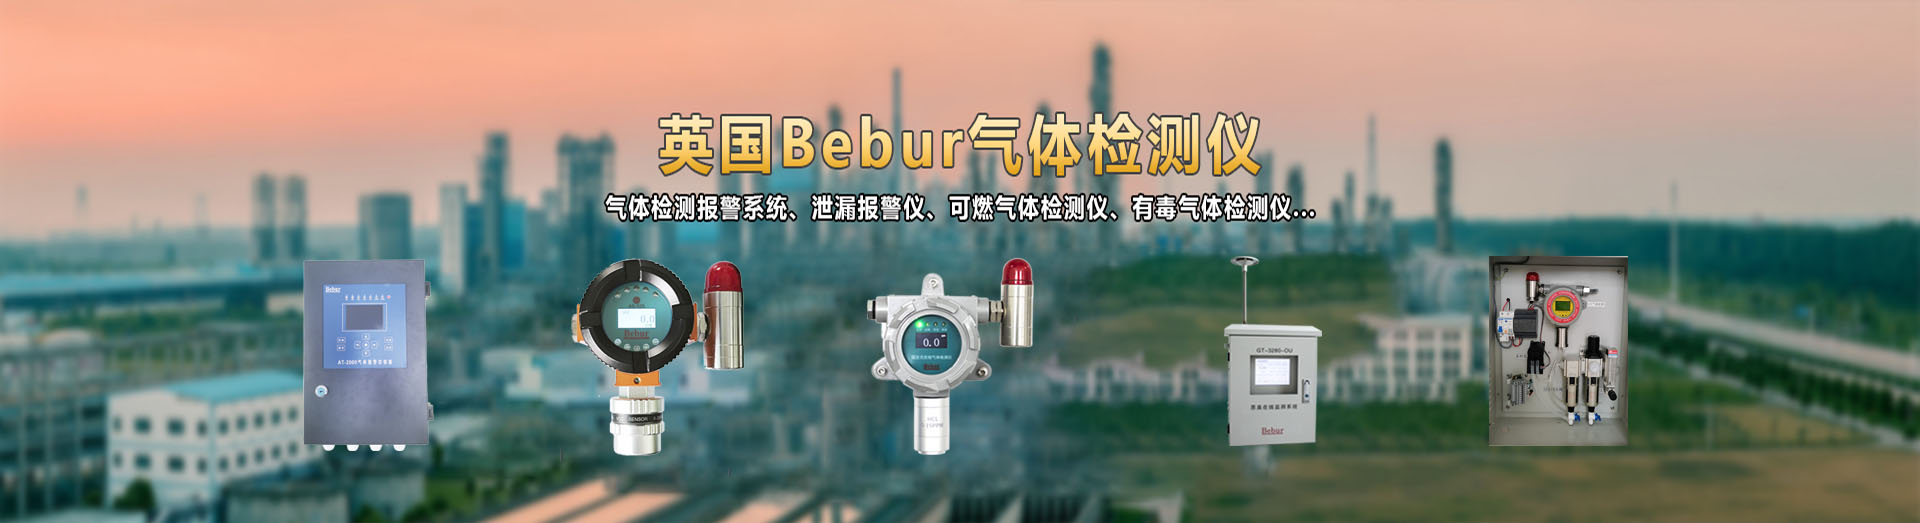 英国Bebur品牌进口氢气检测仪系列产品